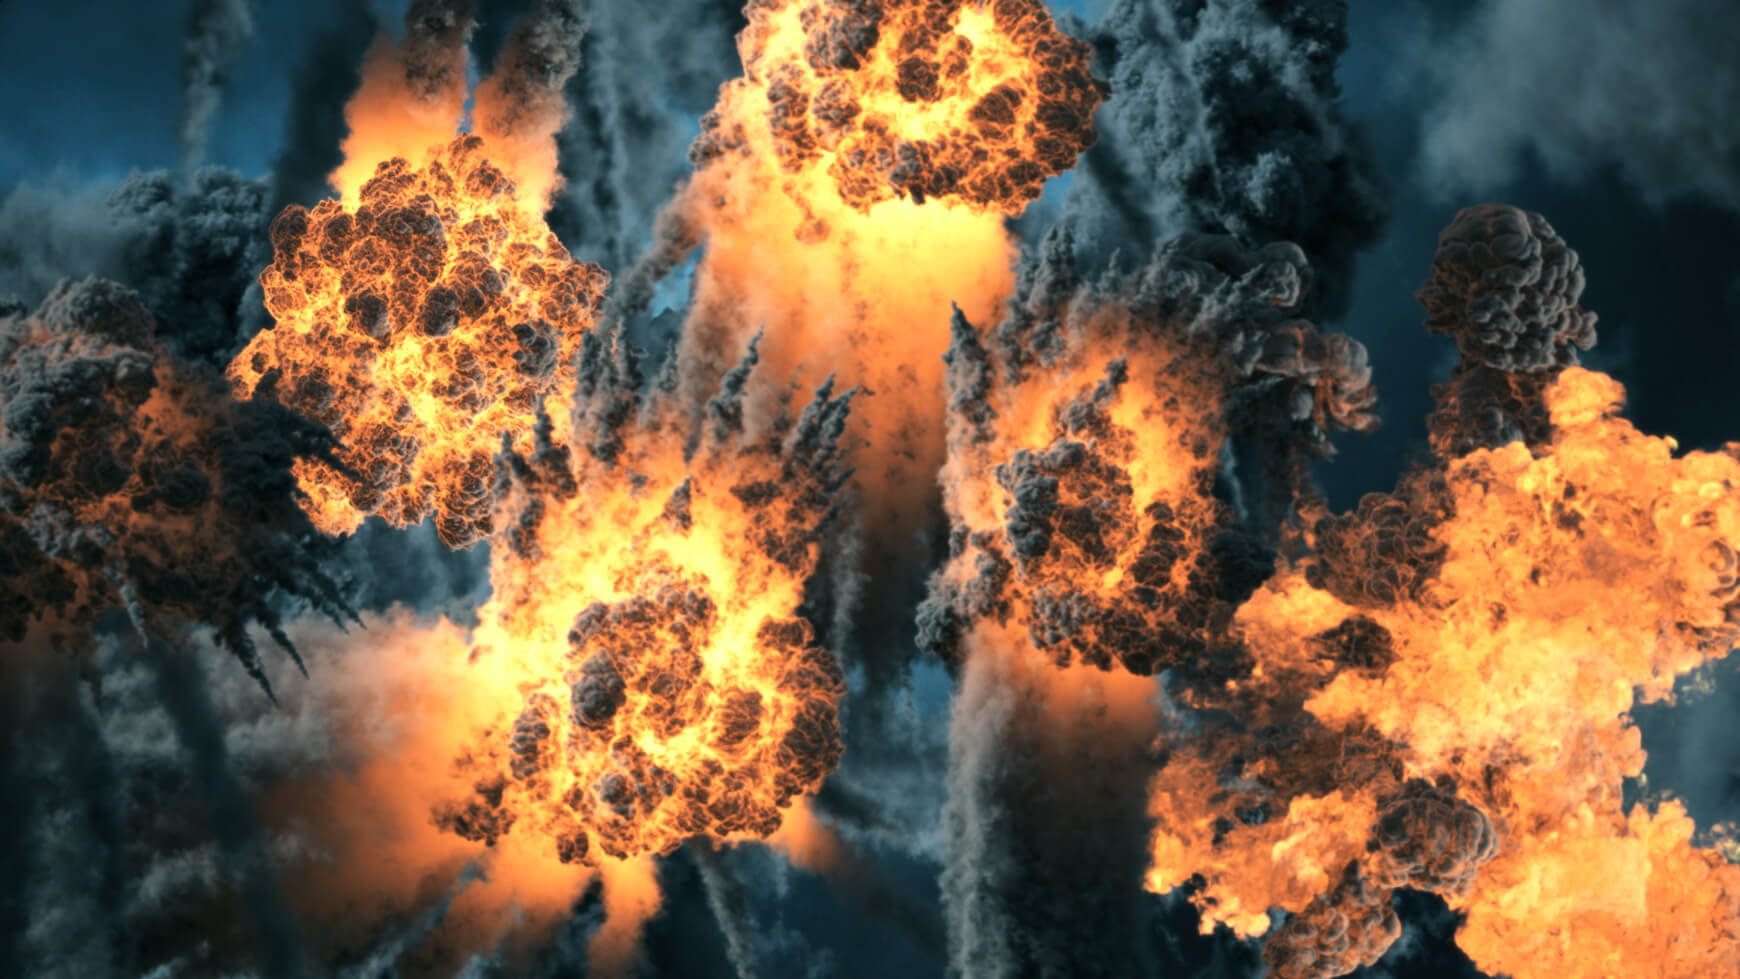 VDB Explosions Aerial Volumes VFX